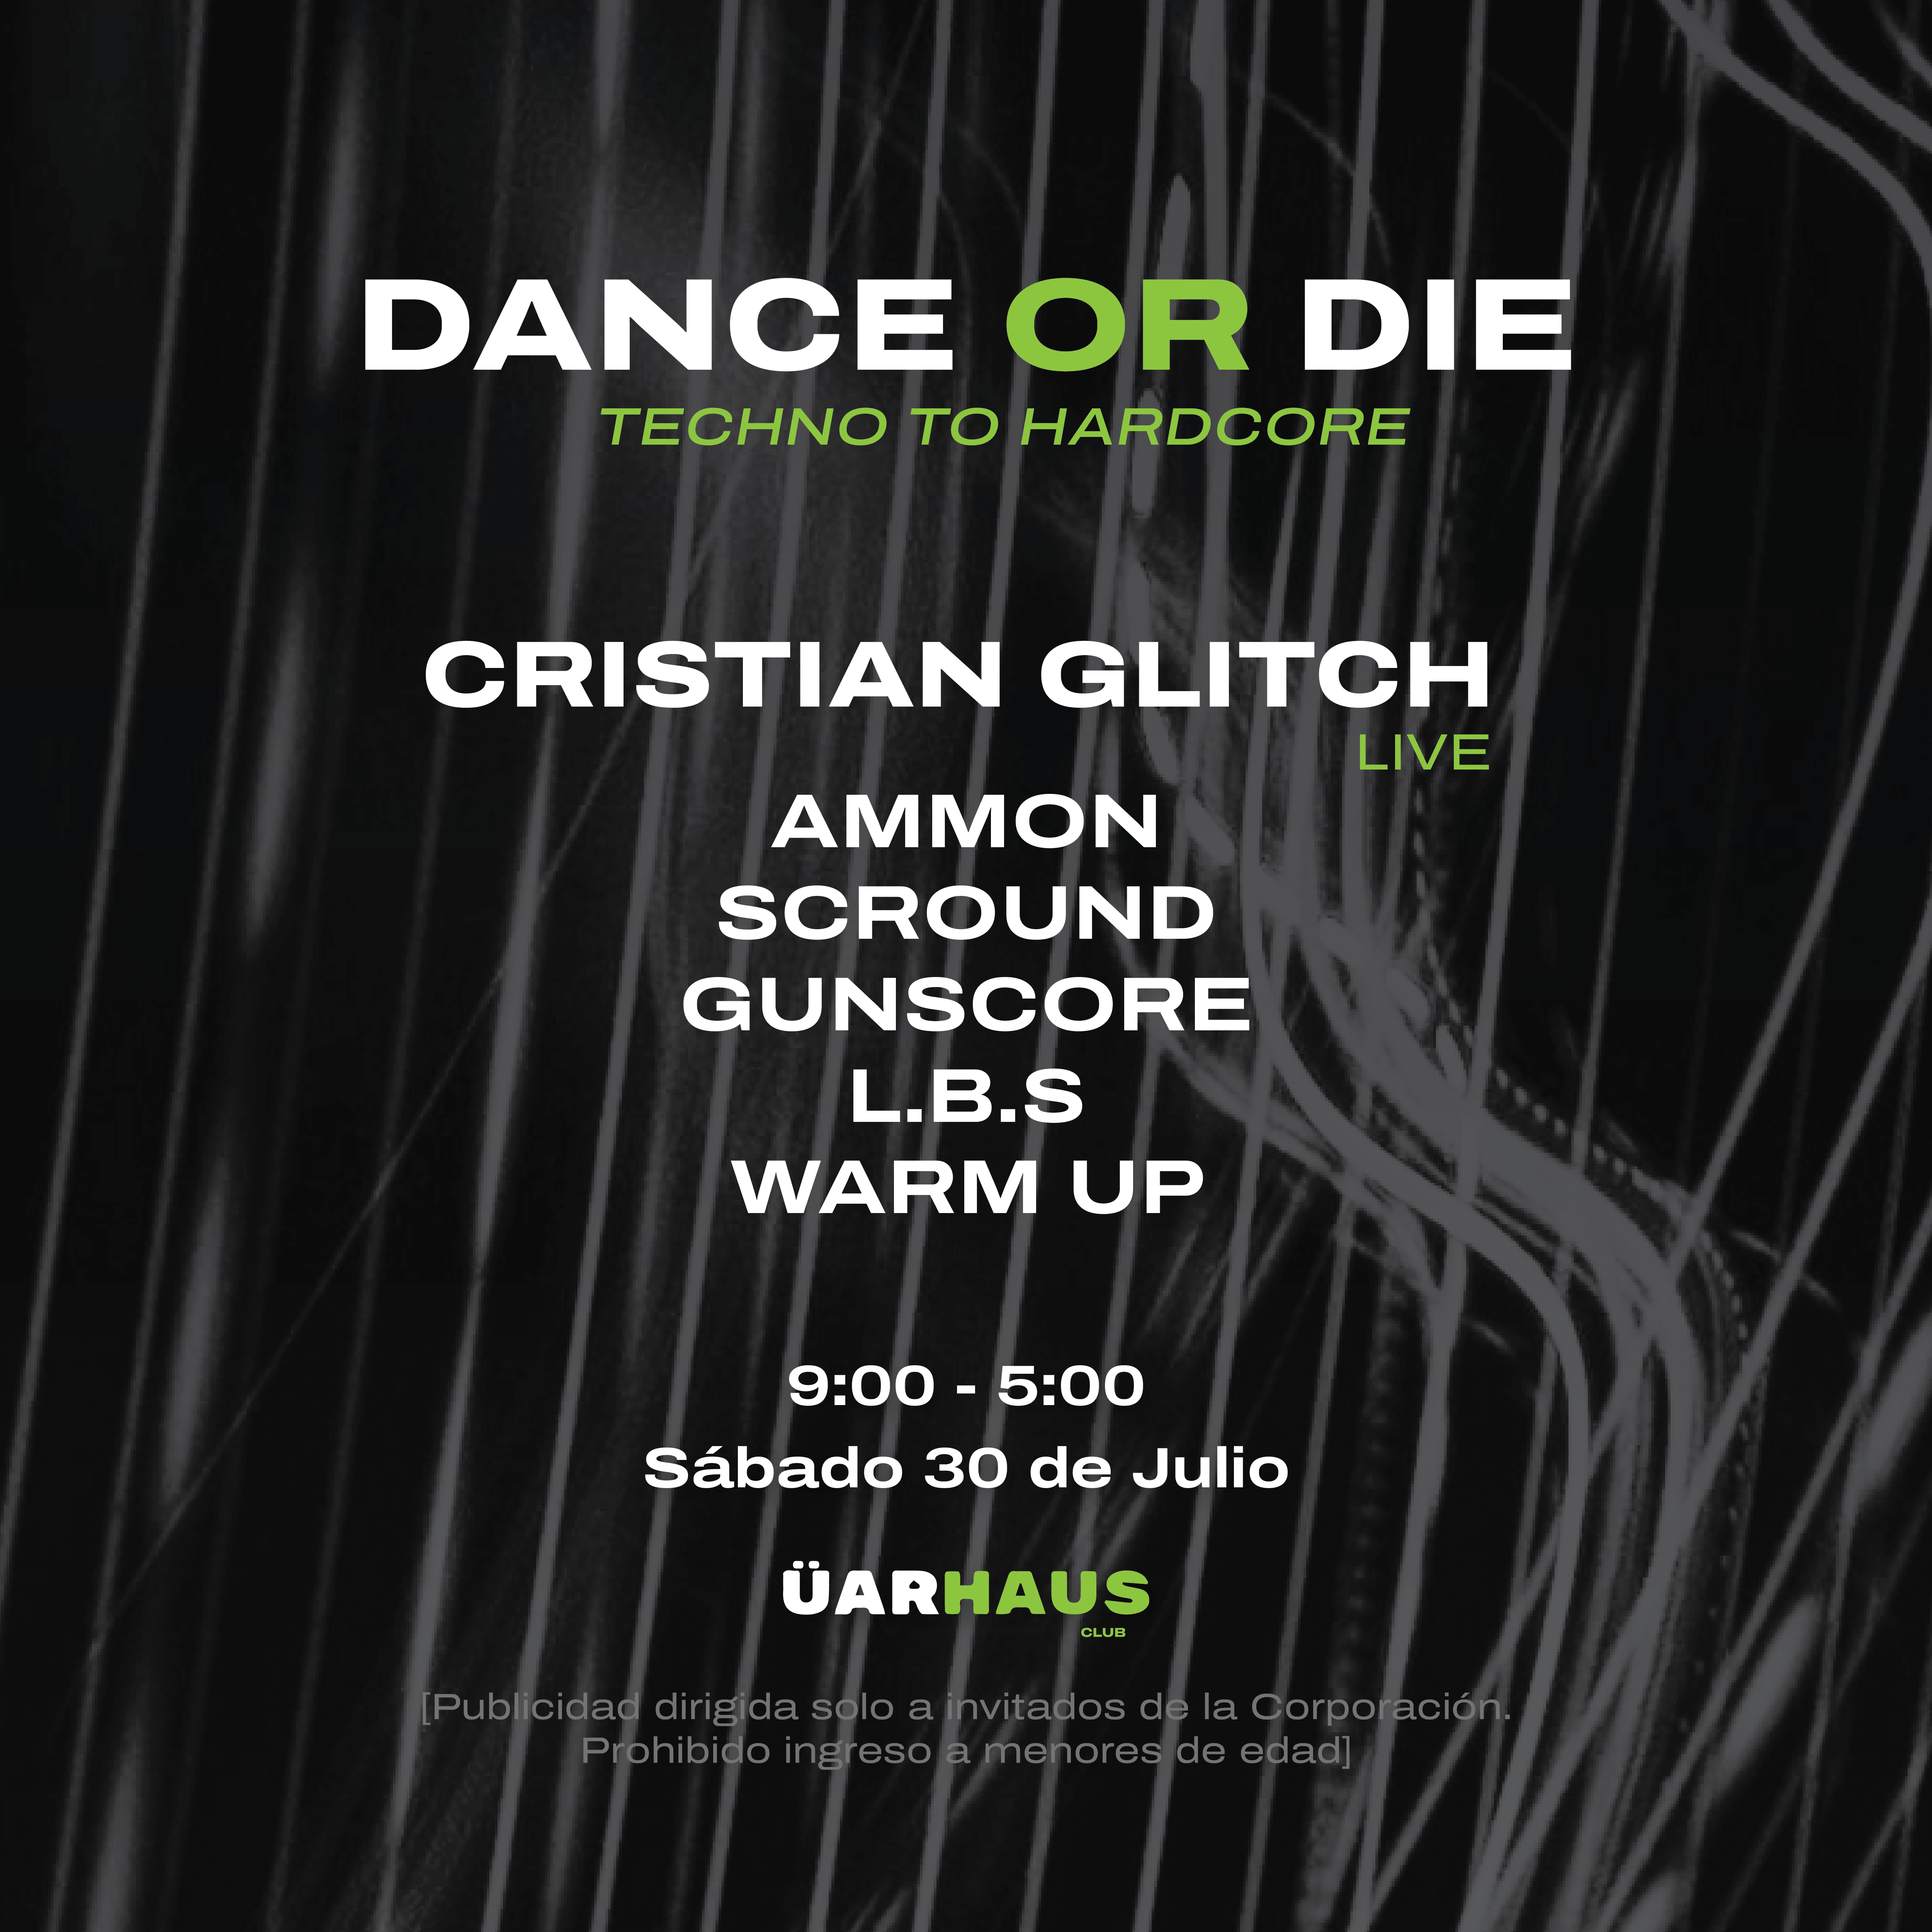 DANCE OR DIE - Cristian Glitch / Live set - Página trasera